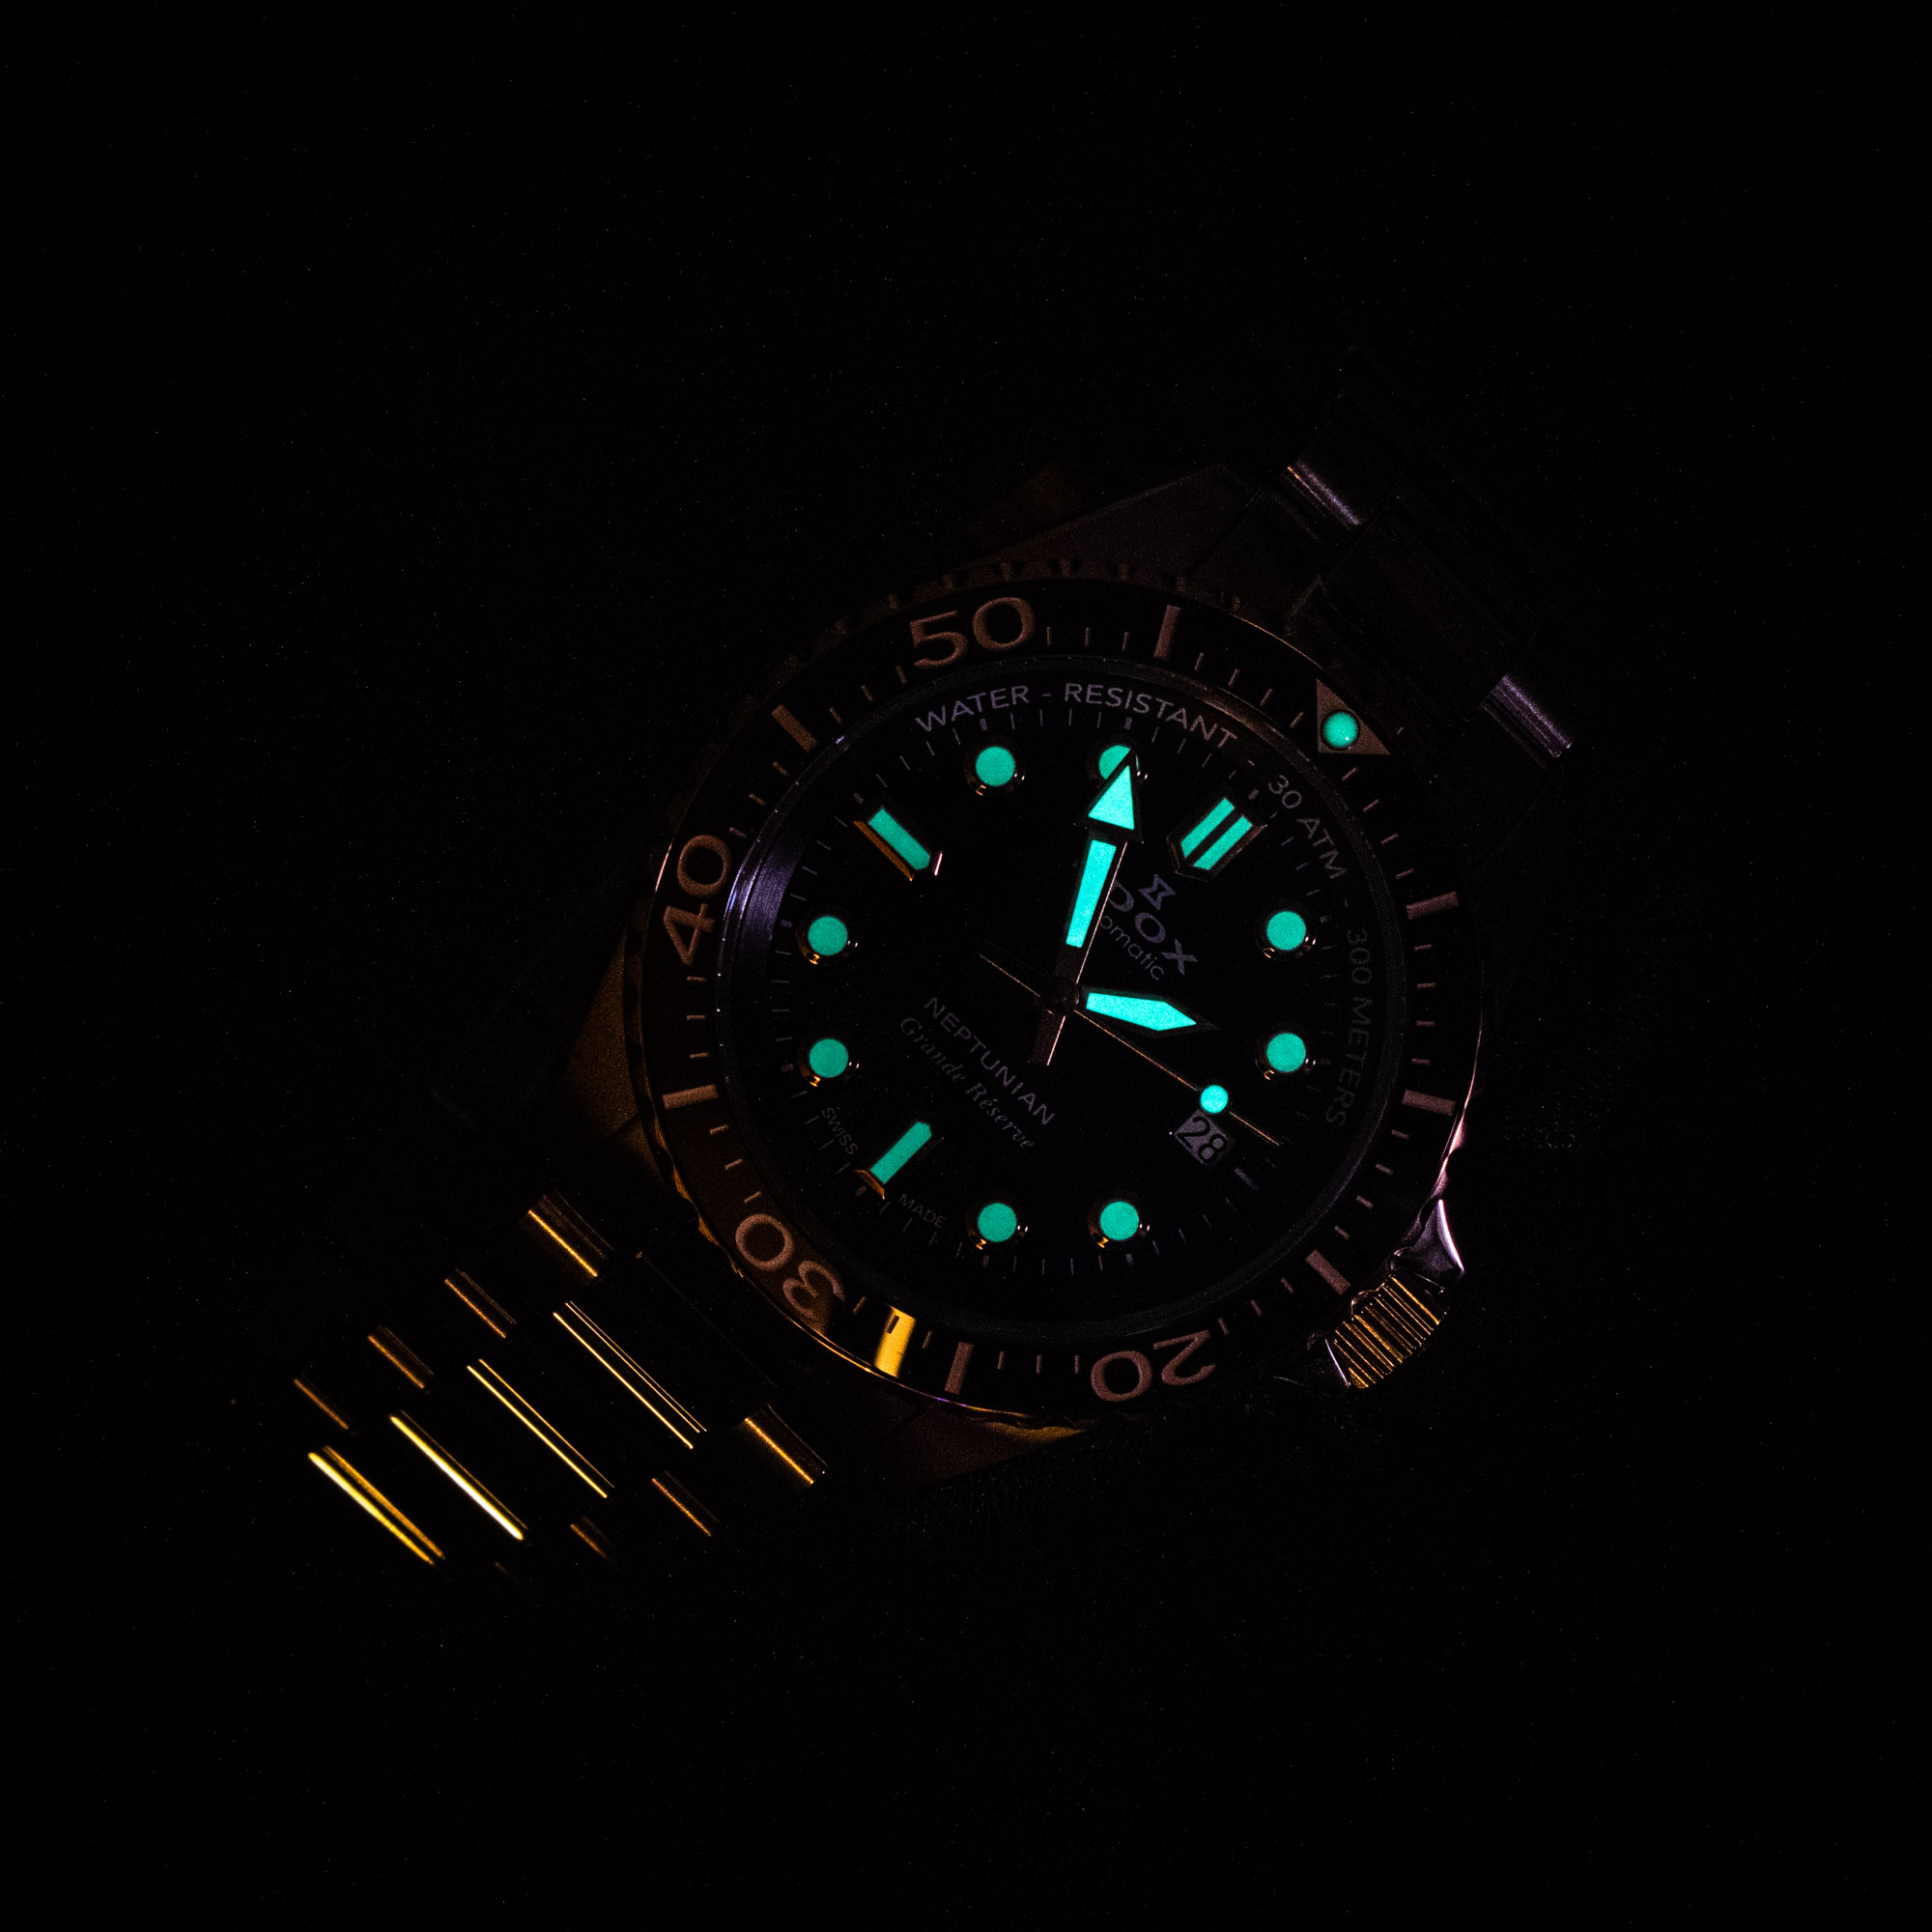 Дайверские часы Edox Neptunian Grande Réserve сочетают в себе функциональность и изысканность